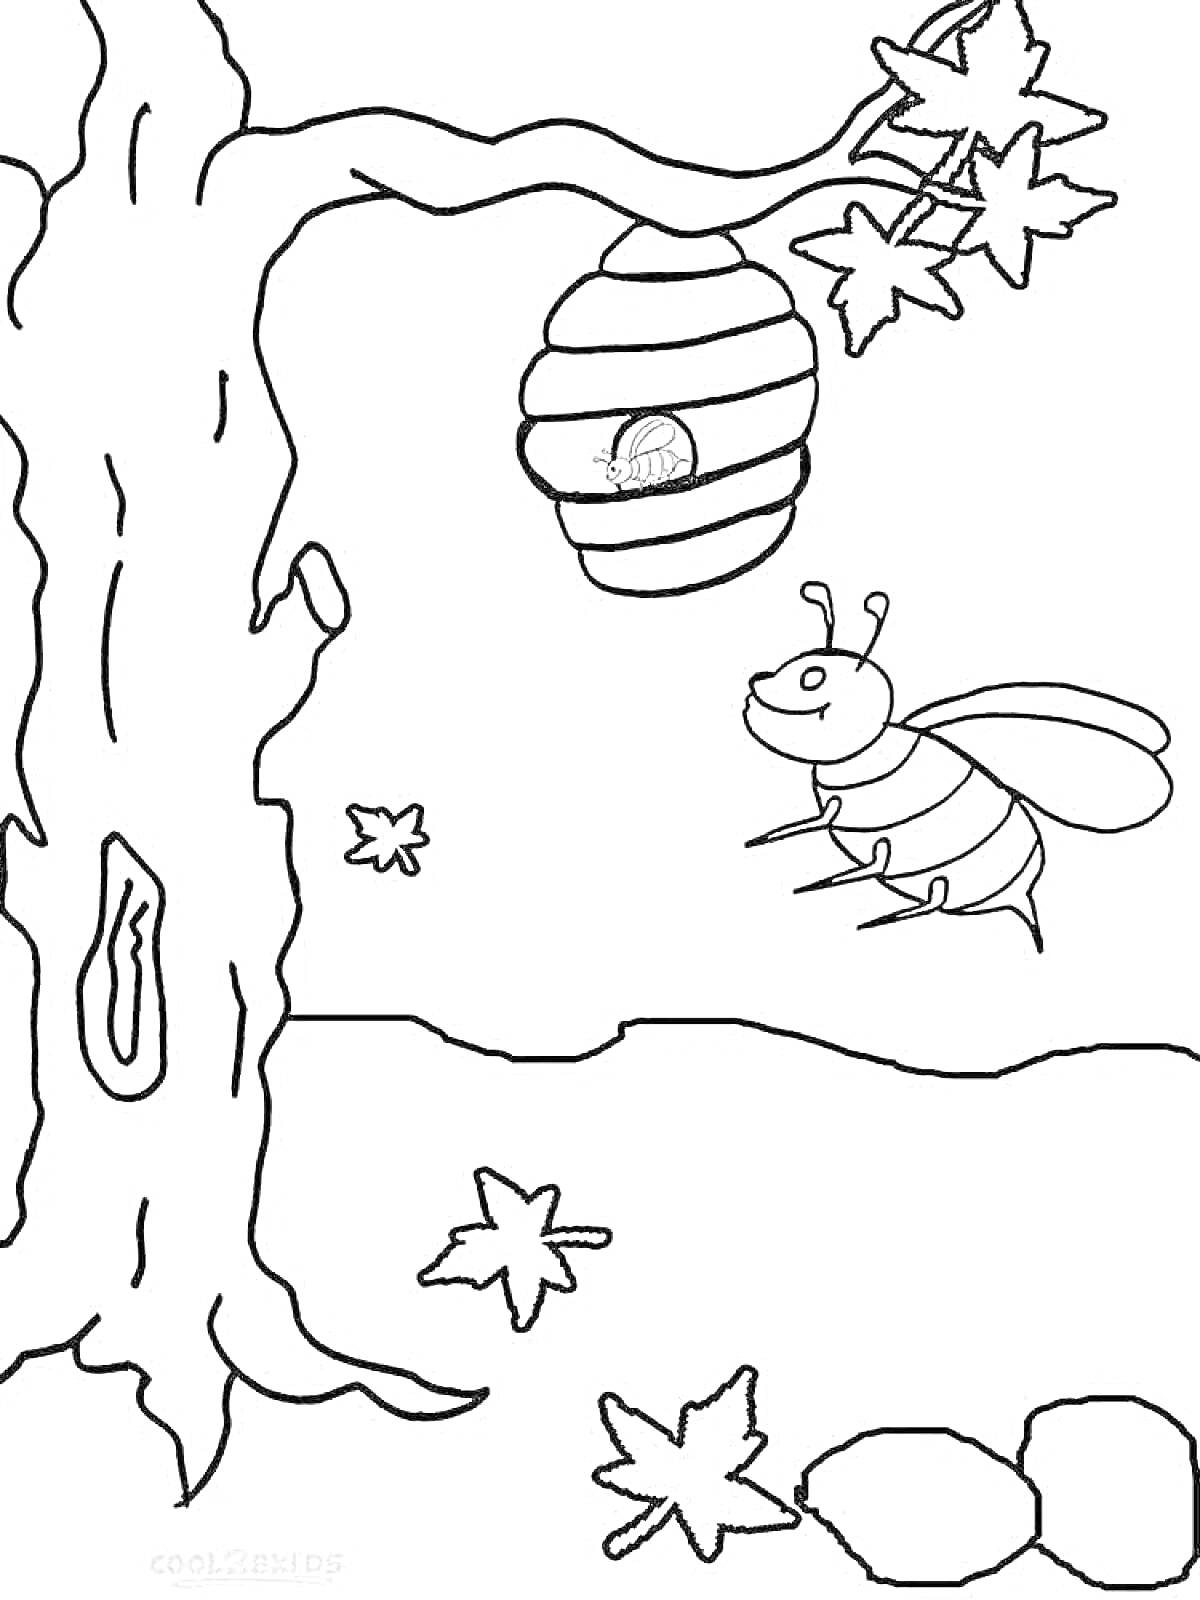 Раскраска Улей на дереве с пчелой, улиткой и опавшими листьями